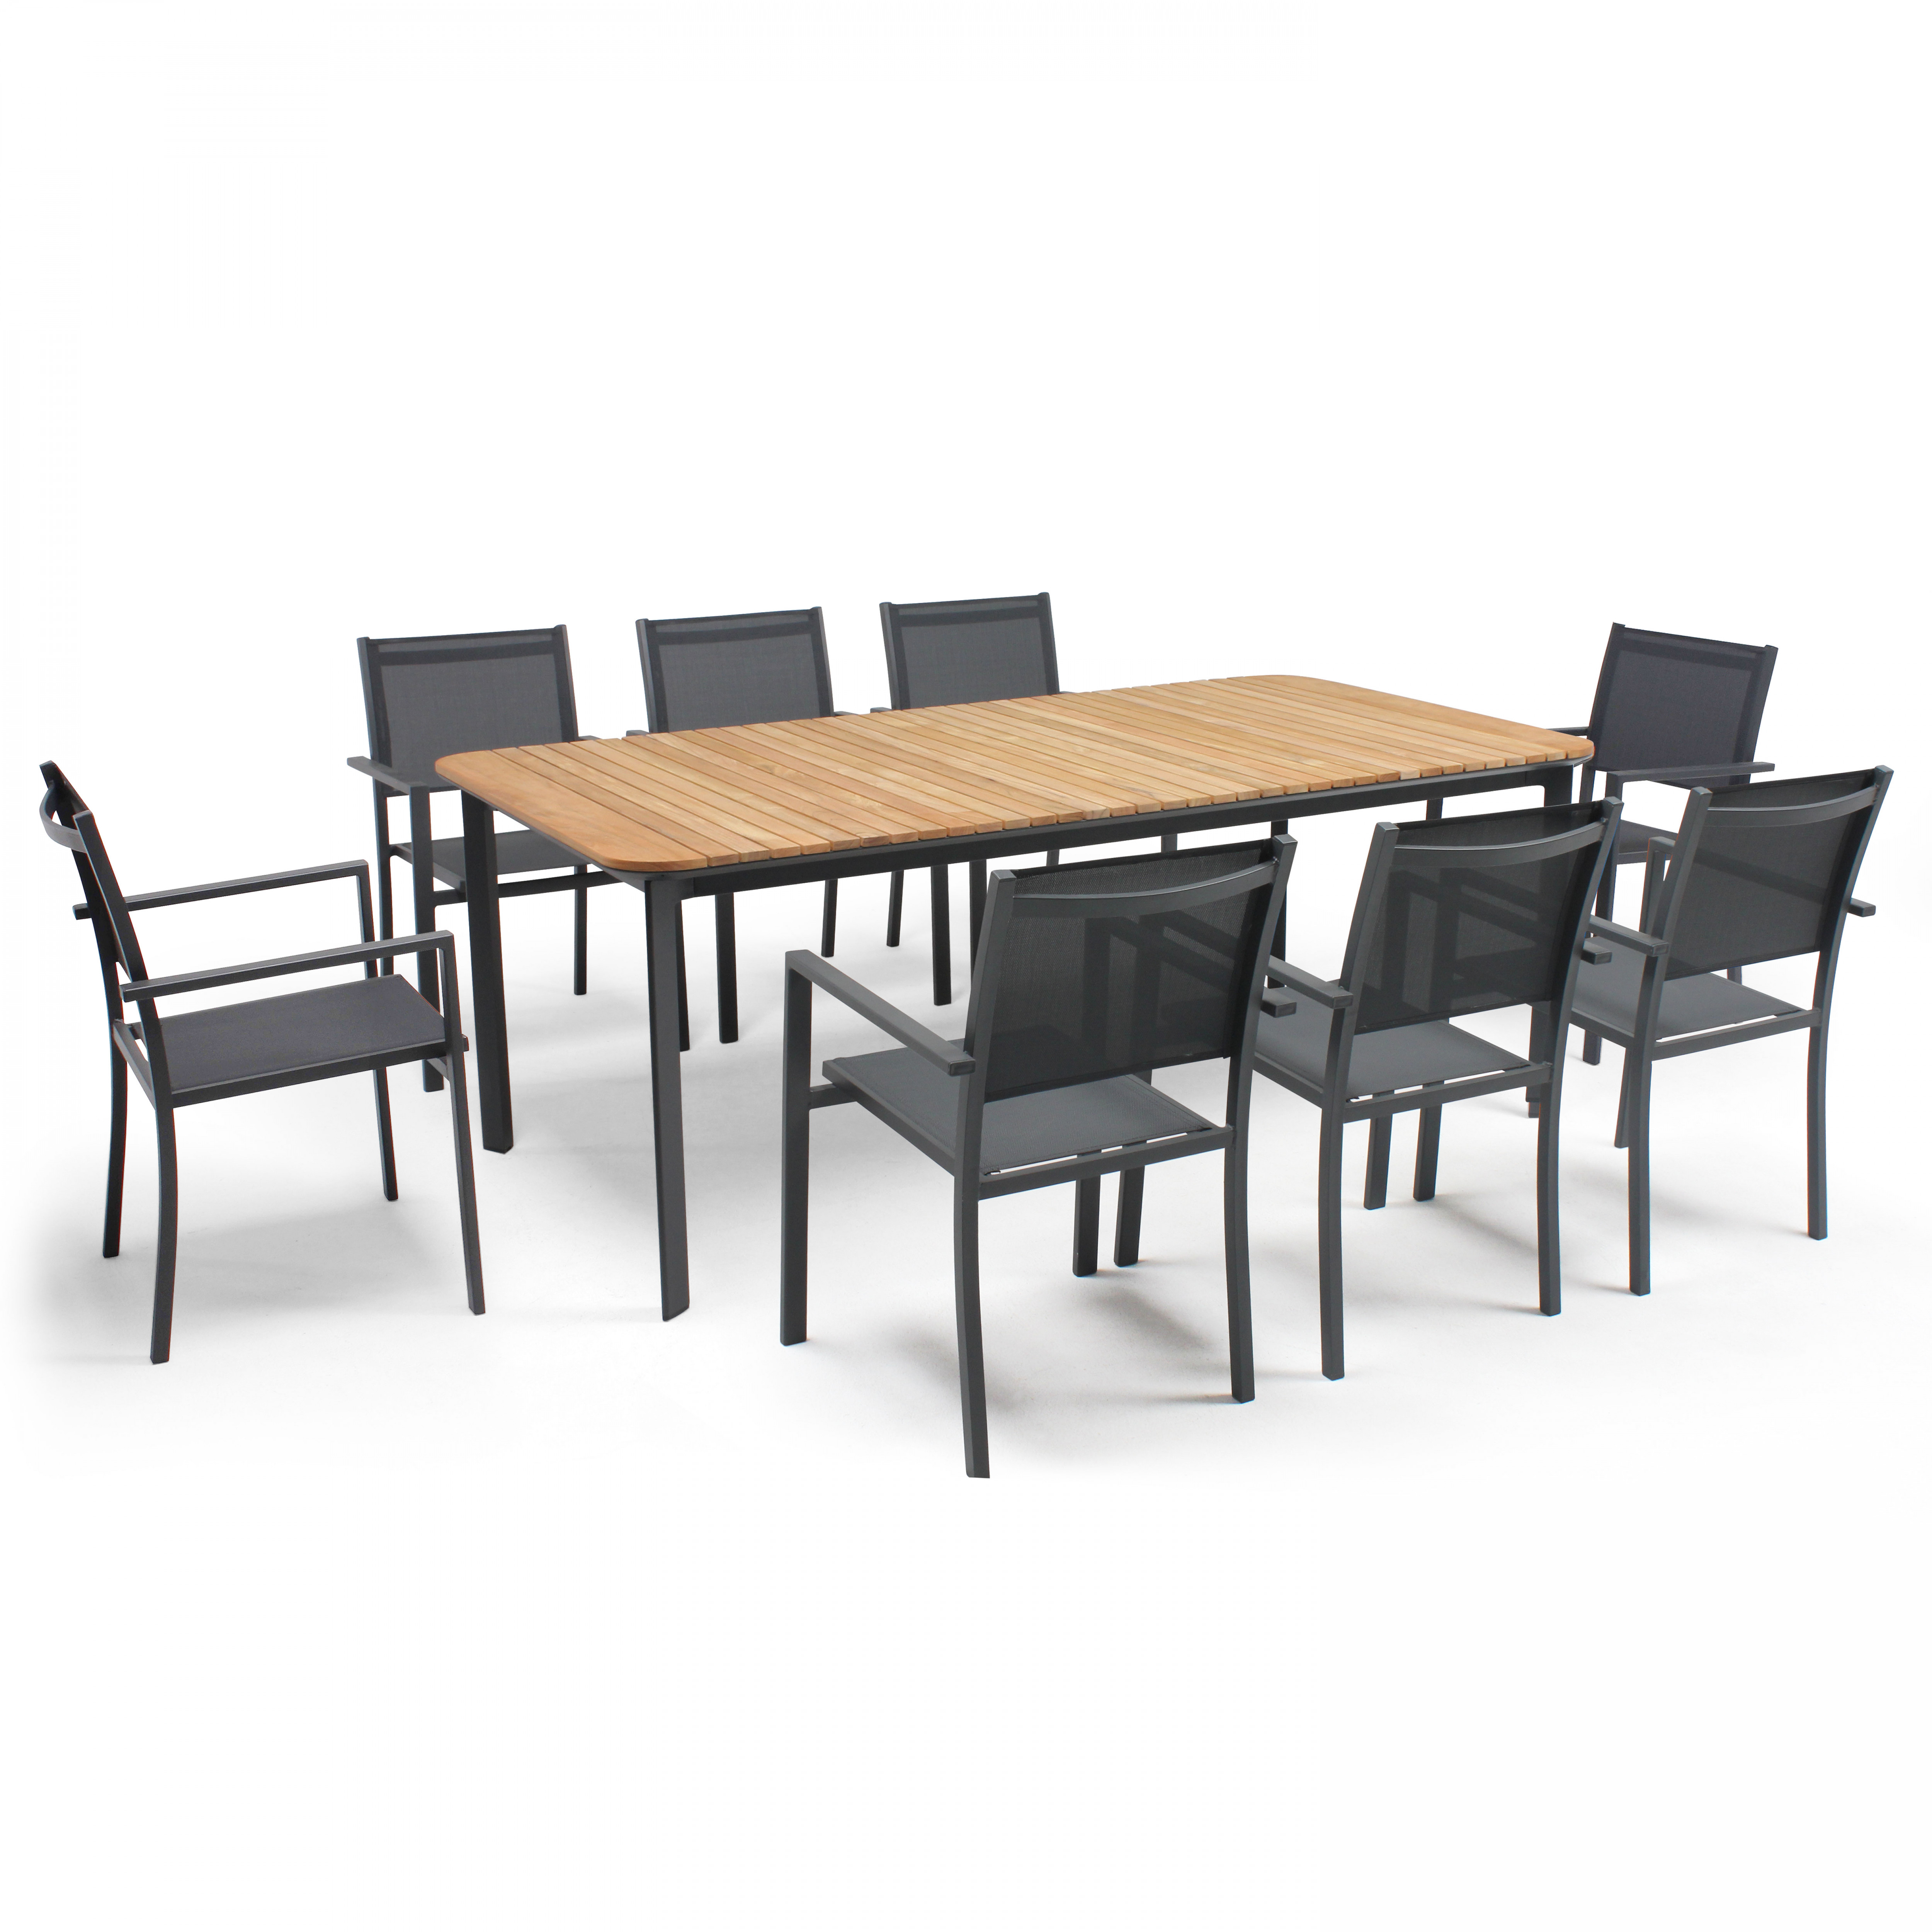 Ensemble table de jardin rectangulaire en aluminium/teck (200 x 100 x 75) et 8 chaises avec accoudoi